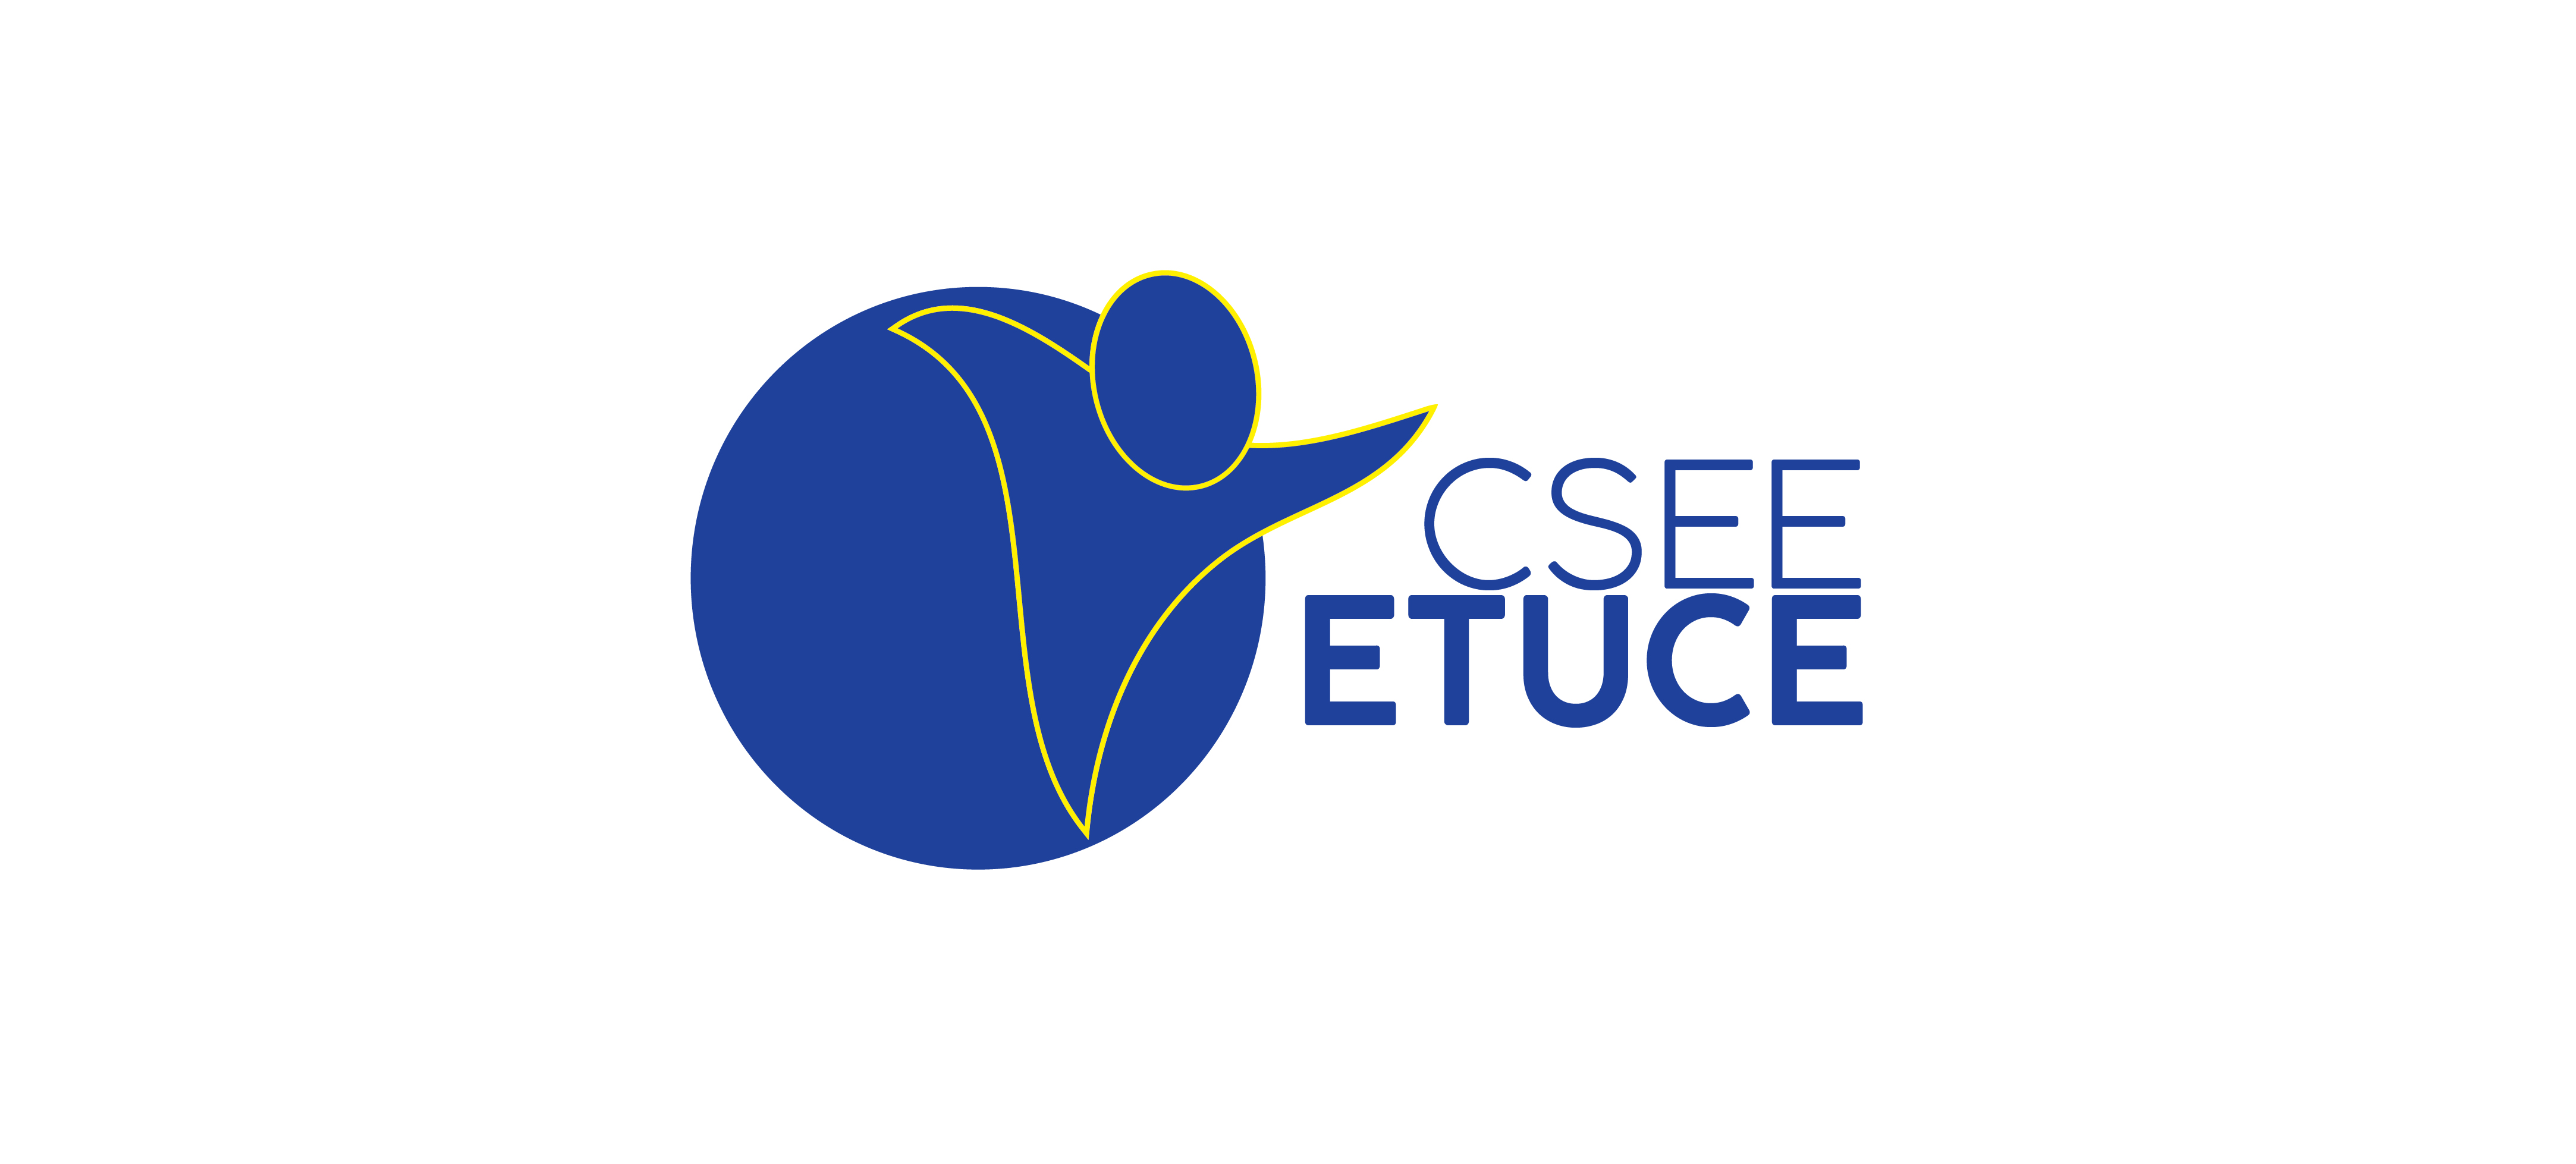 ETUCE: Önlemleri Gevşetirken Eğitimcilere ve Örgütlerine Kulak Verin